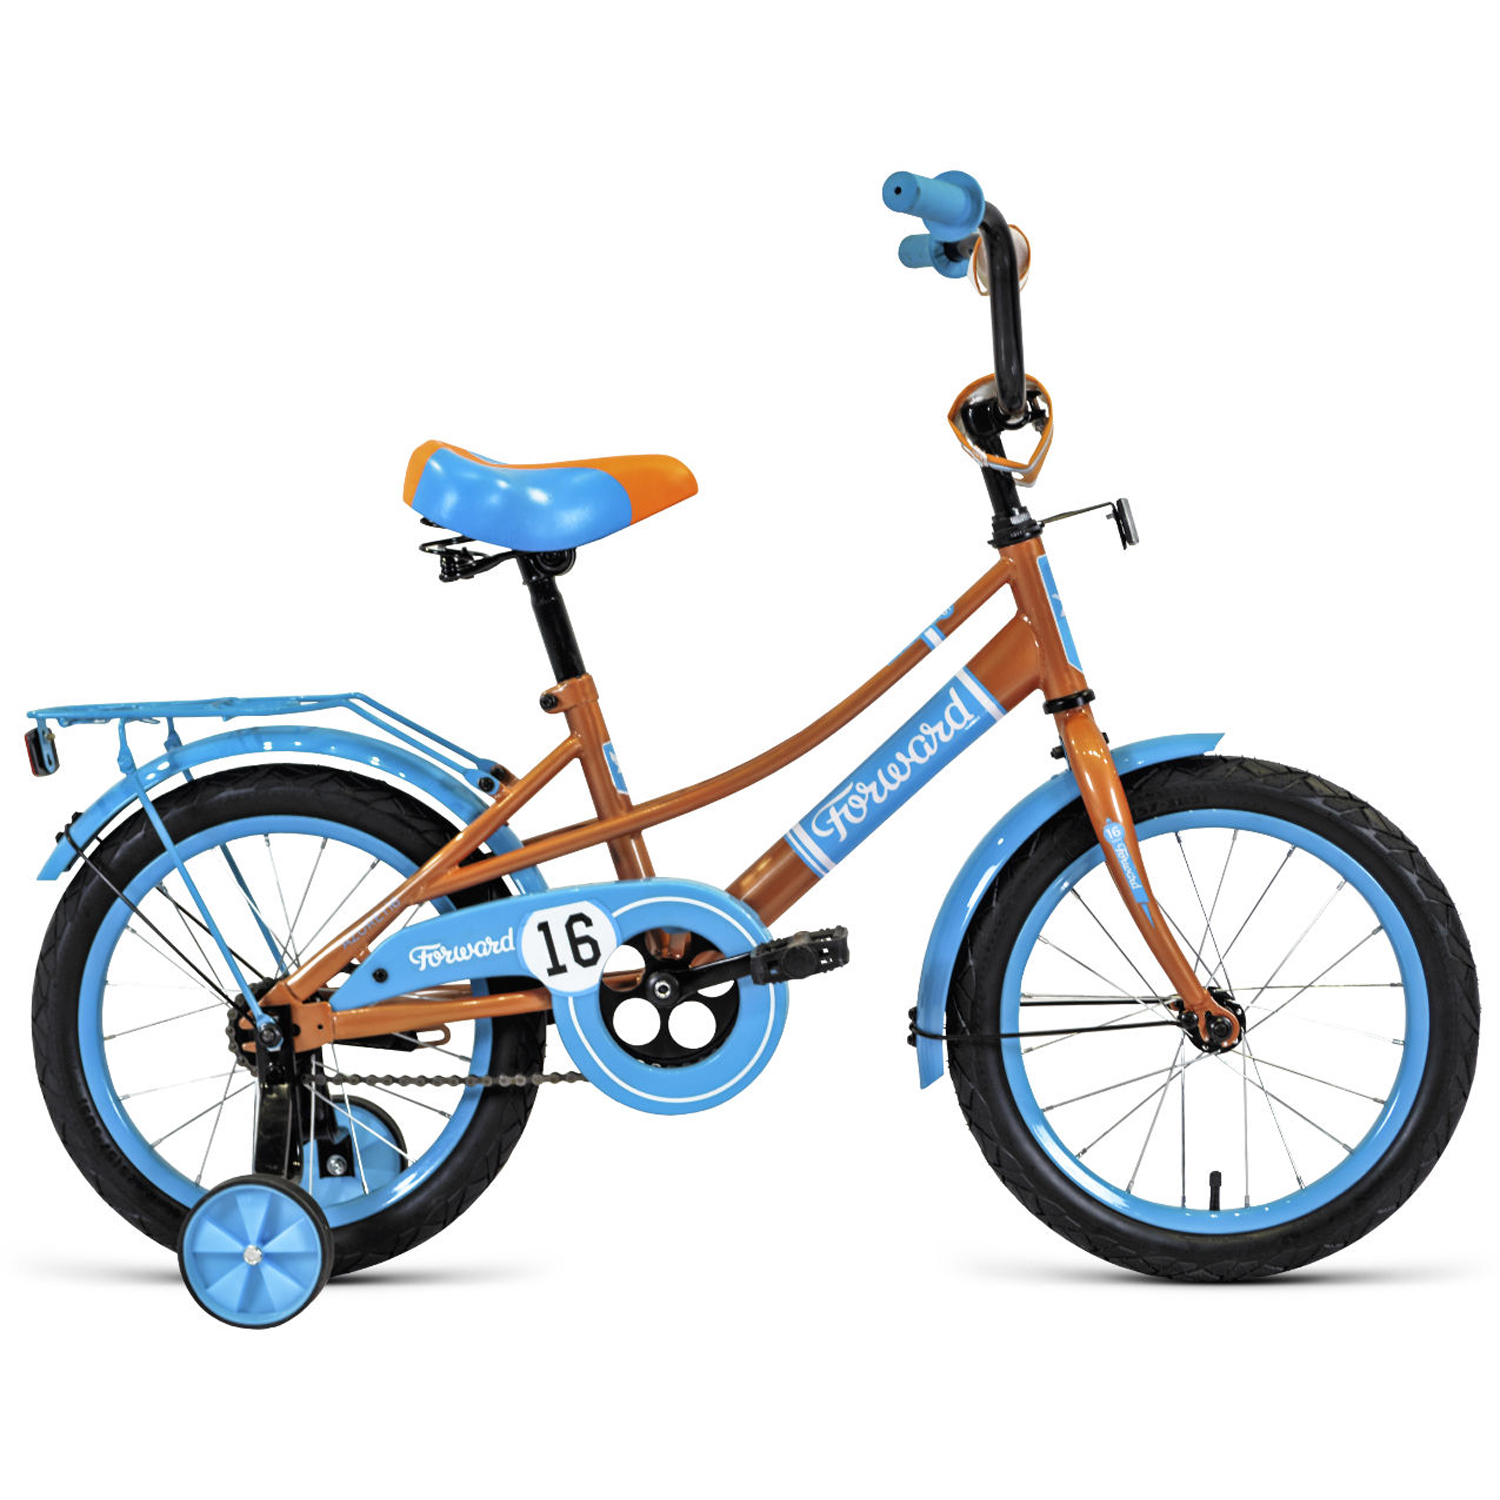 Двухколесный велосипед Forward Azure 16 2021, бежевый/голубой велосипед двухколесный forward crocky 16 2021